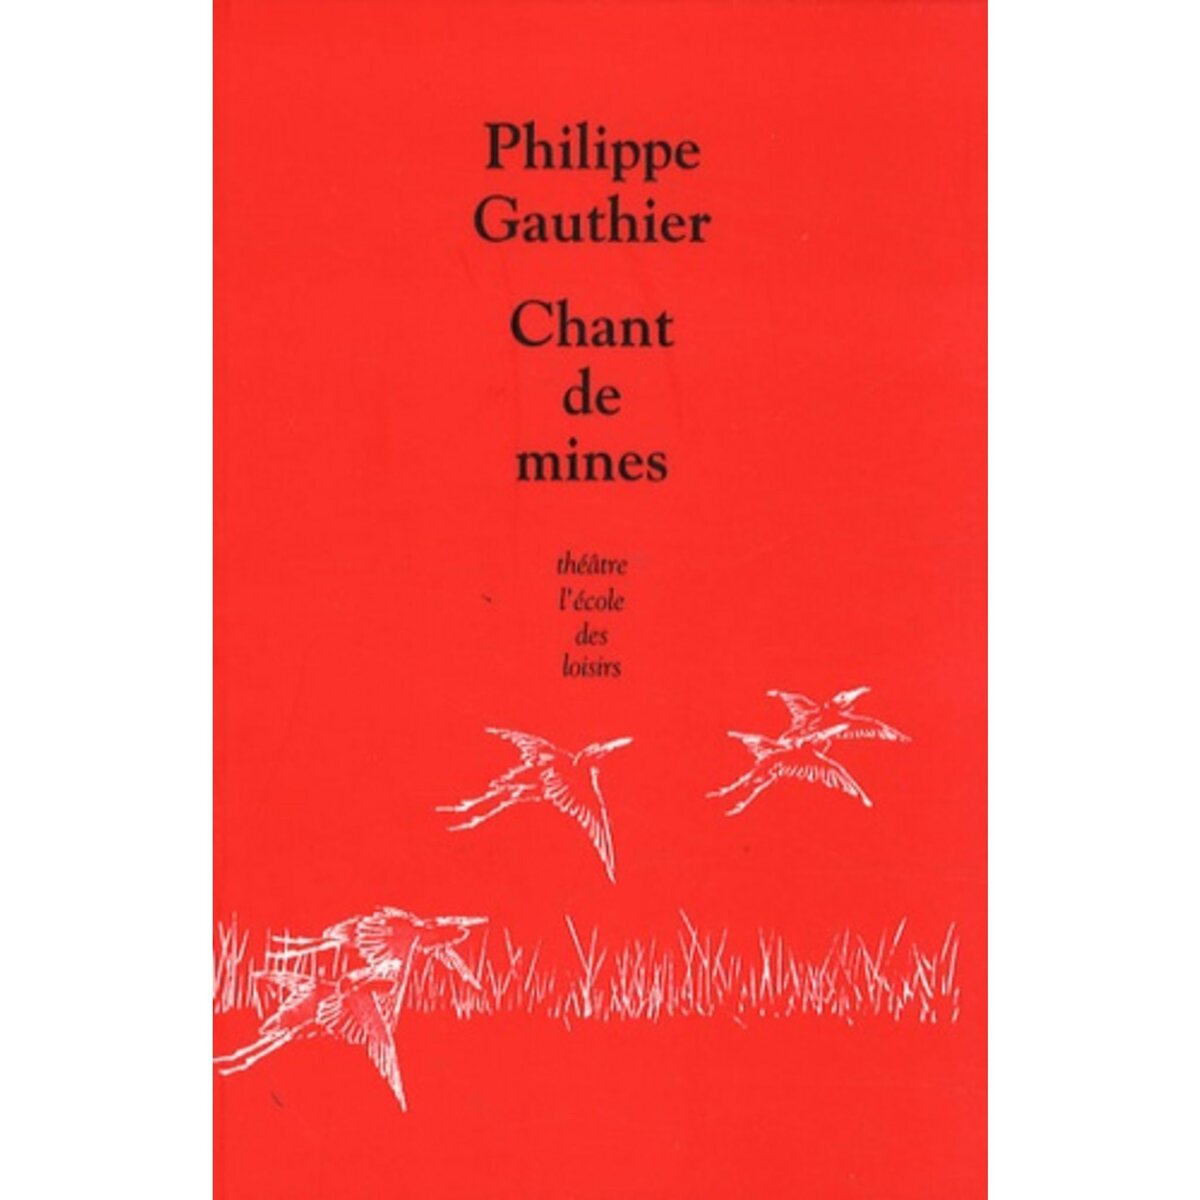  CHANT DE MINES, Gauthier Philippe